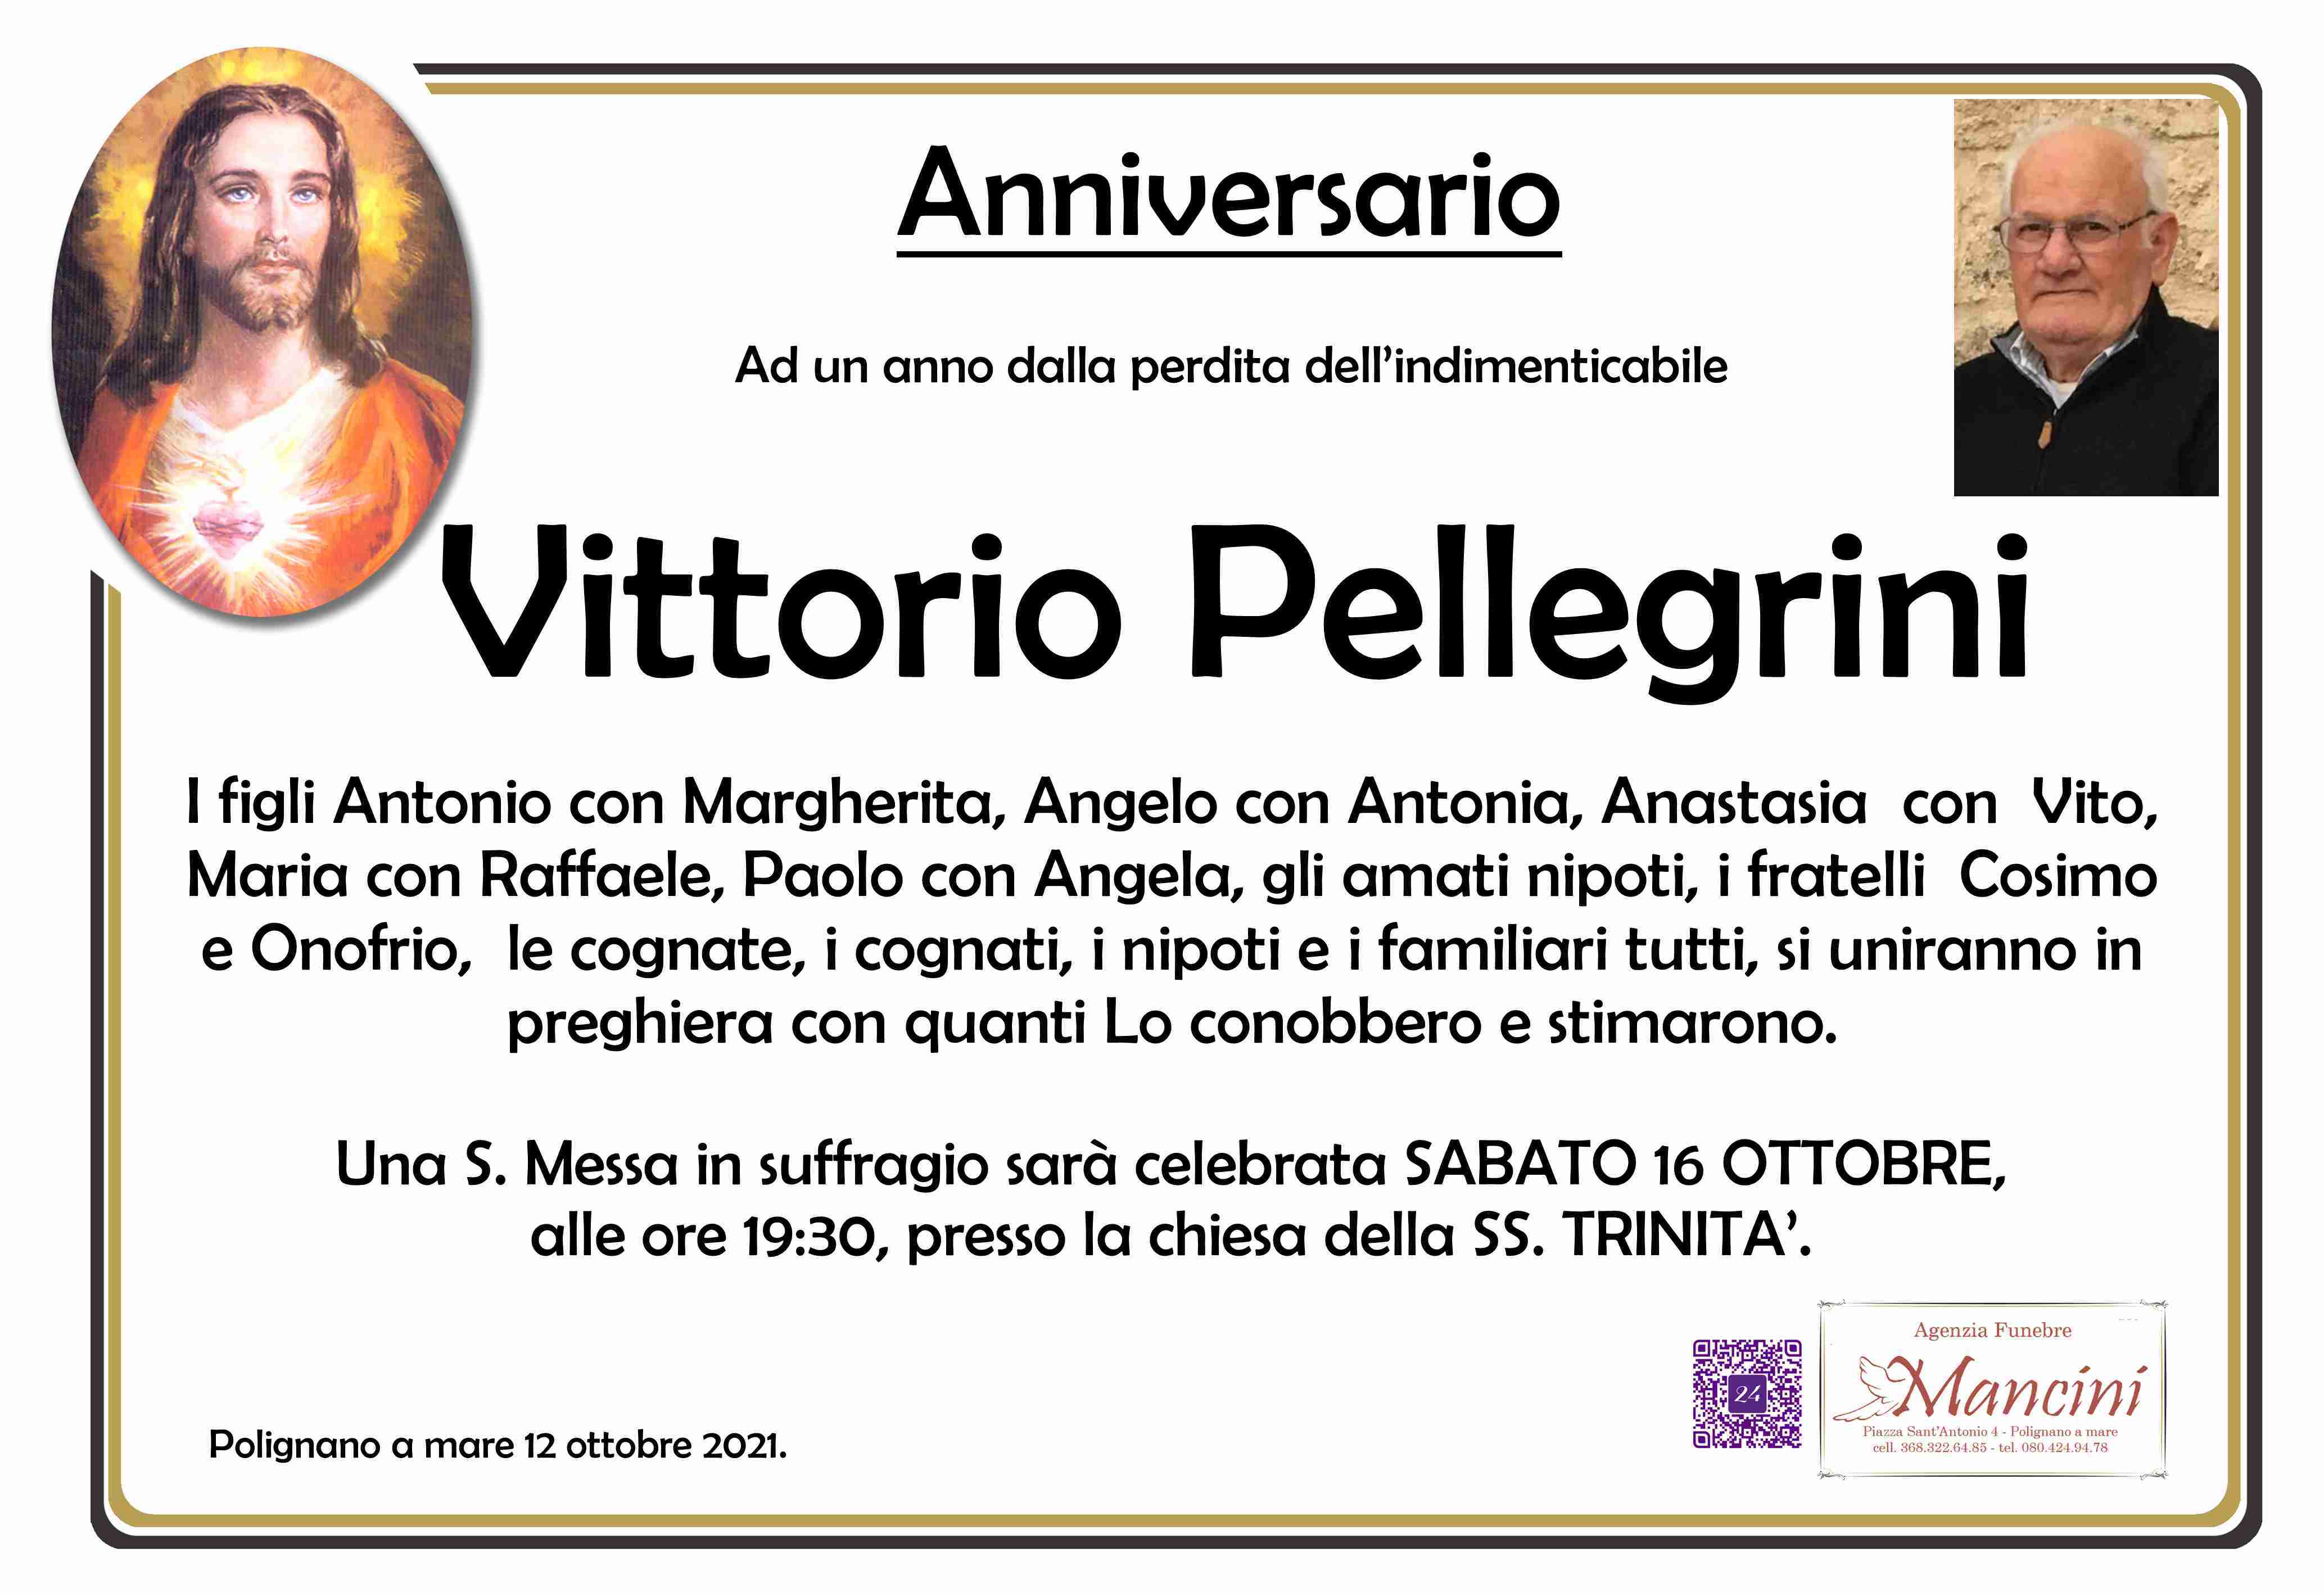 Vittorio Pellegrini